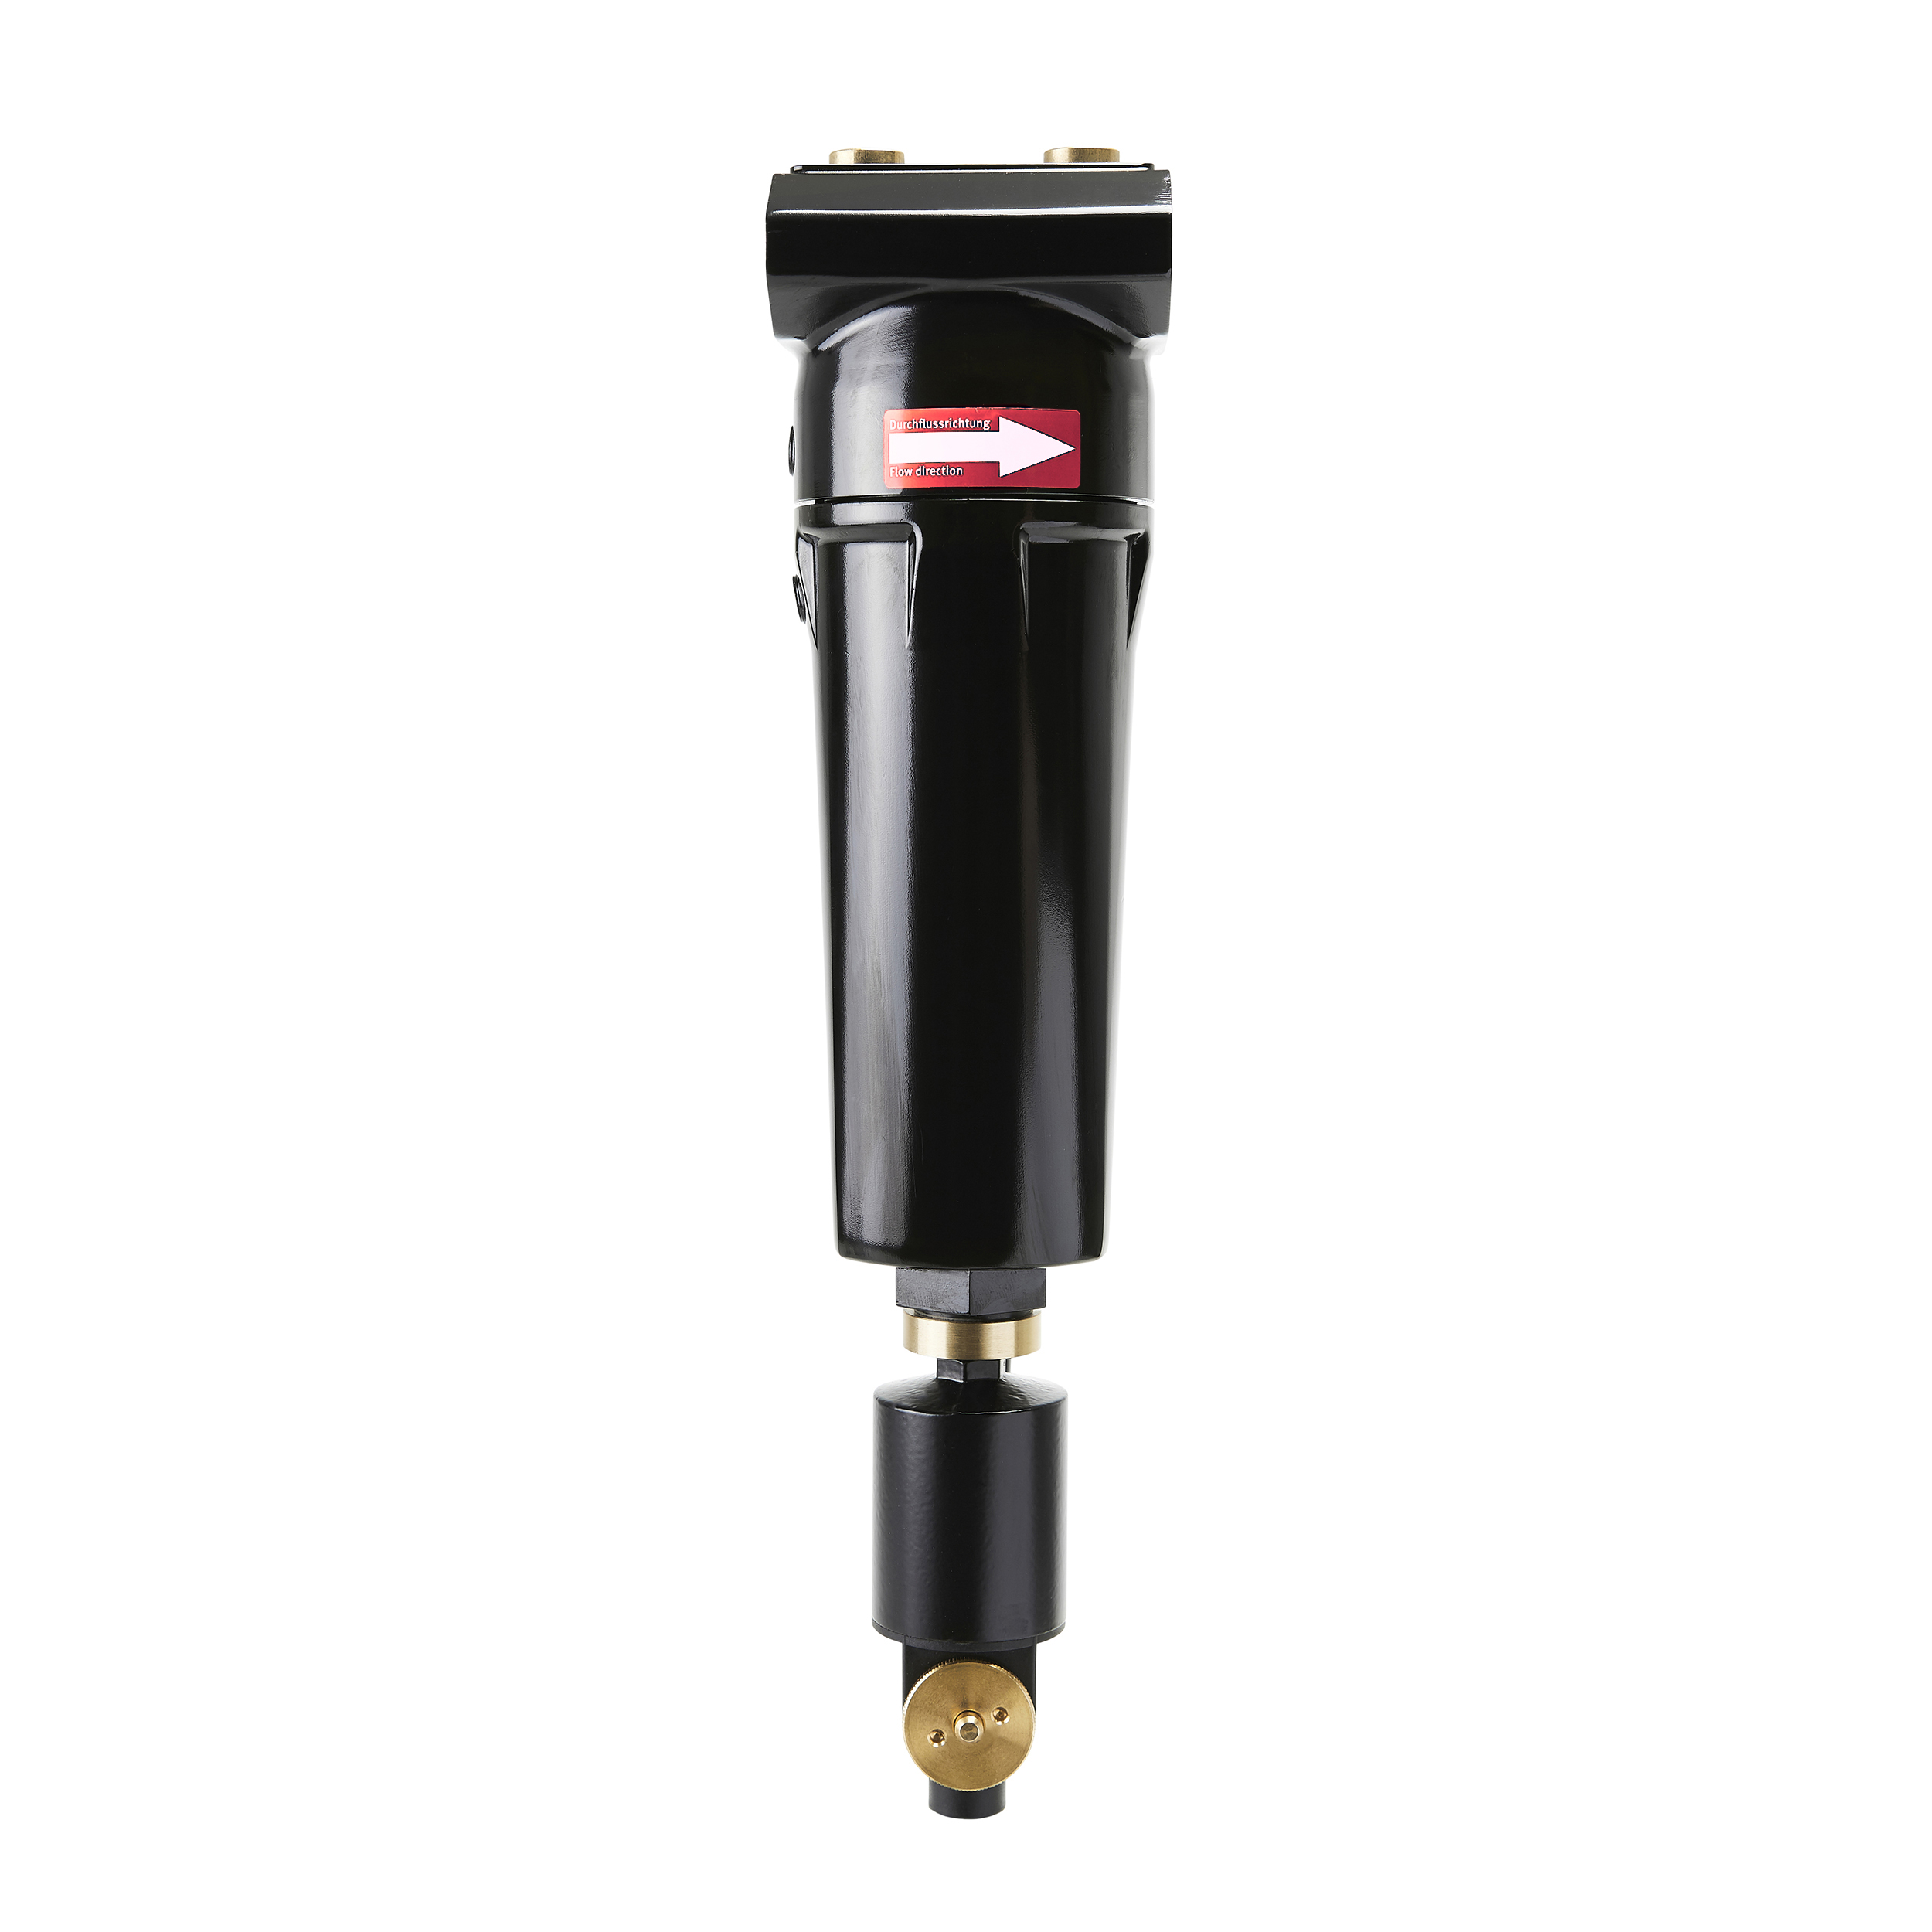 airclean, prefilter, BG 50, G¼, auto. attachable drain valve A, MOP: 16 bar